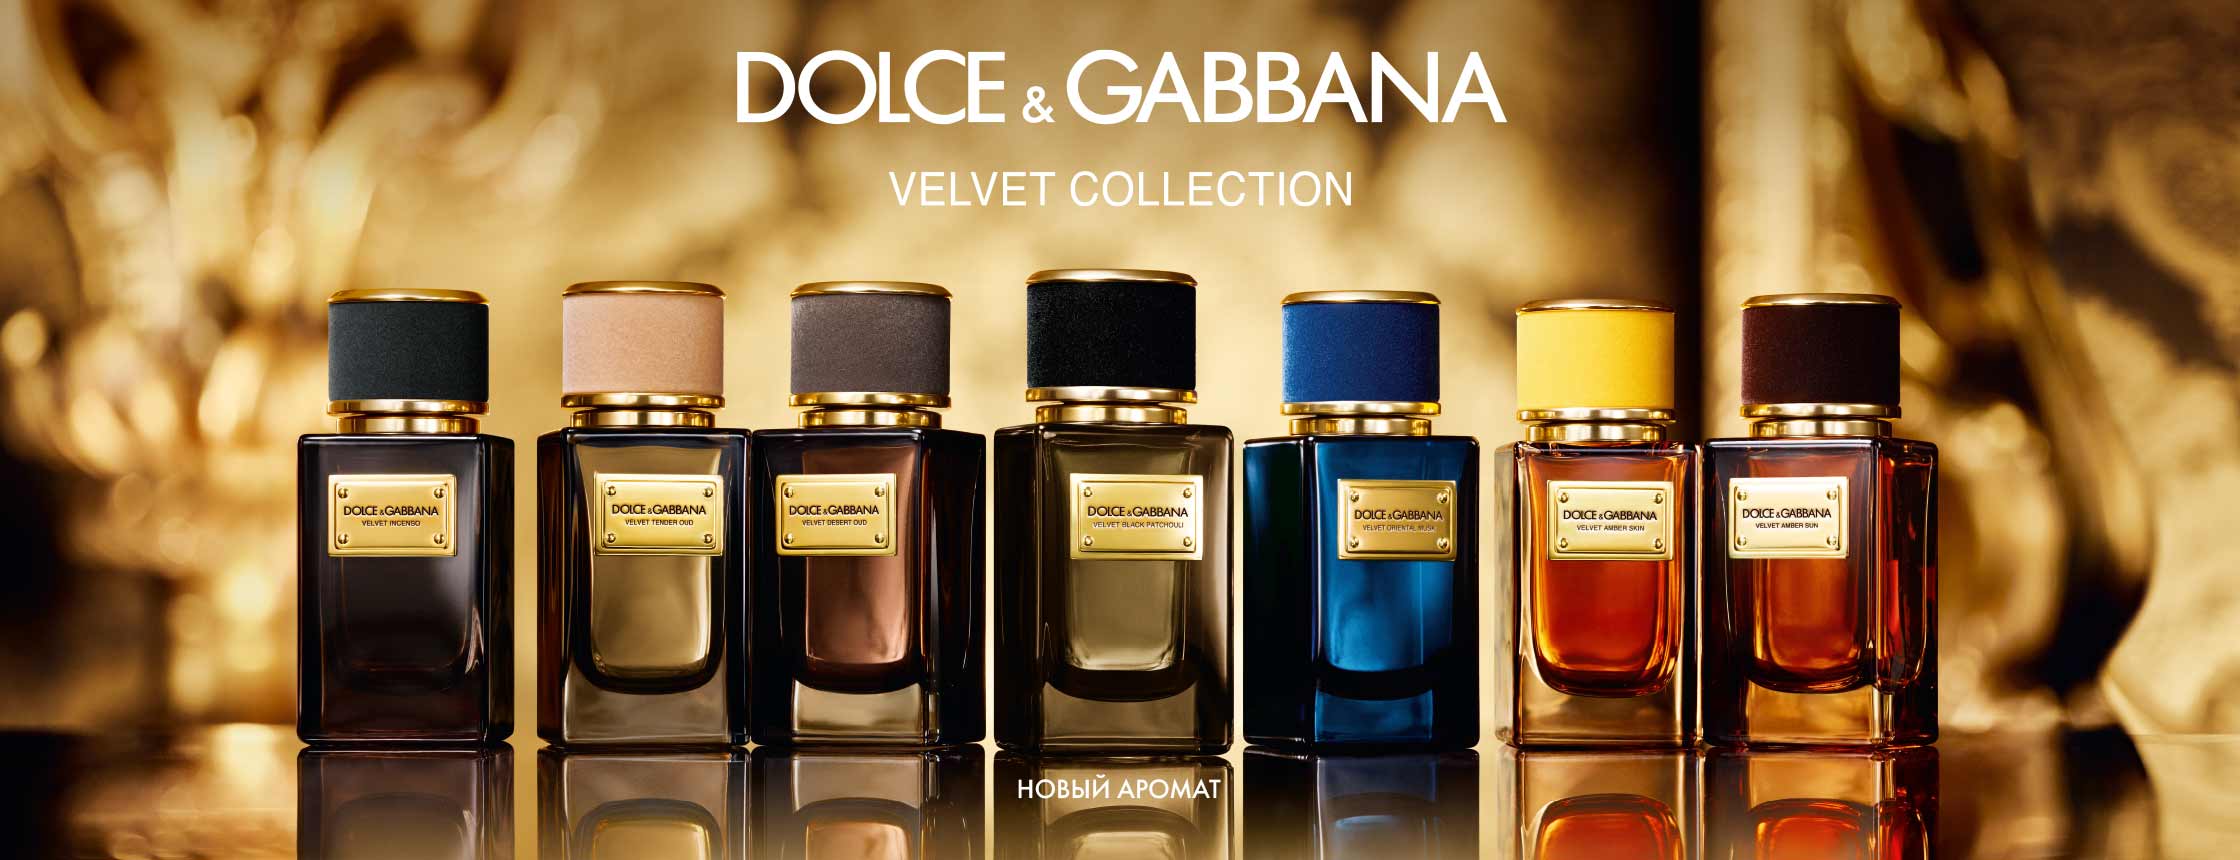 Оригинальная дольче габбана. Dolce&Gabbana Velvet collection Black Patchouli. Dolce & Gabbana Velvet Black Patchouli. Дольче Габбана вельвет Инсенсо. Dolce Gabbana Patchouli.